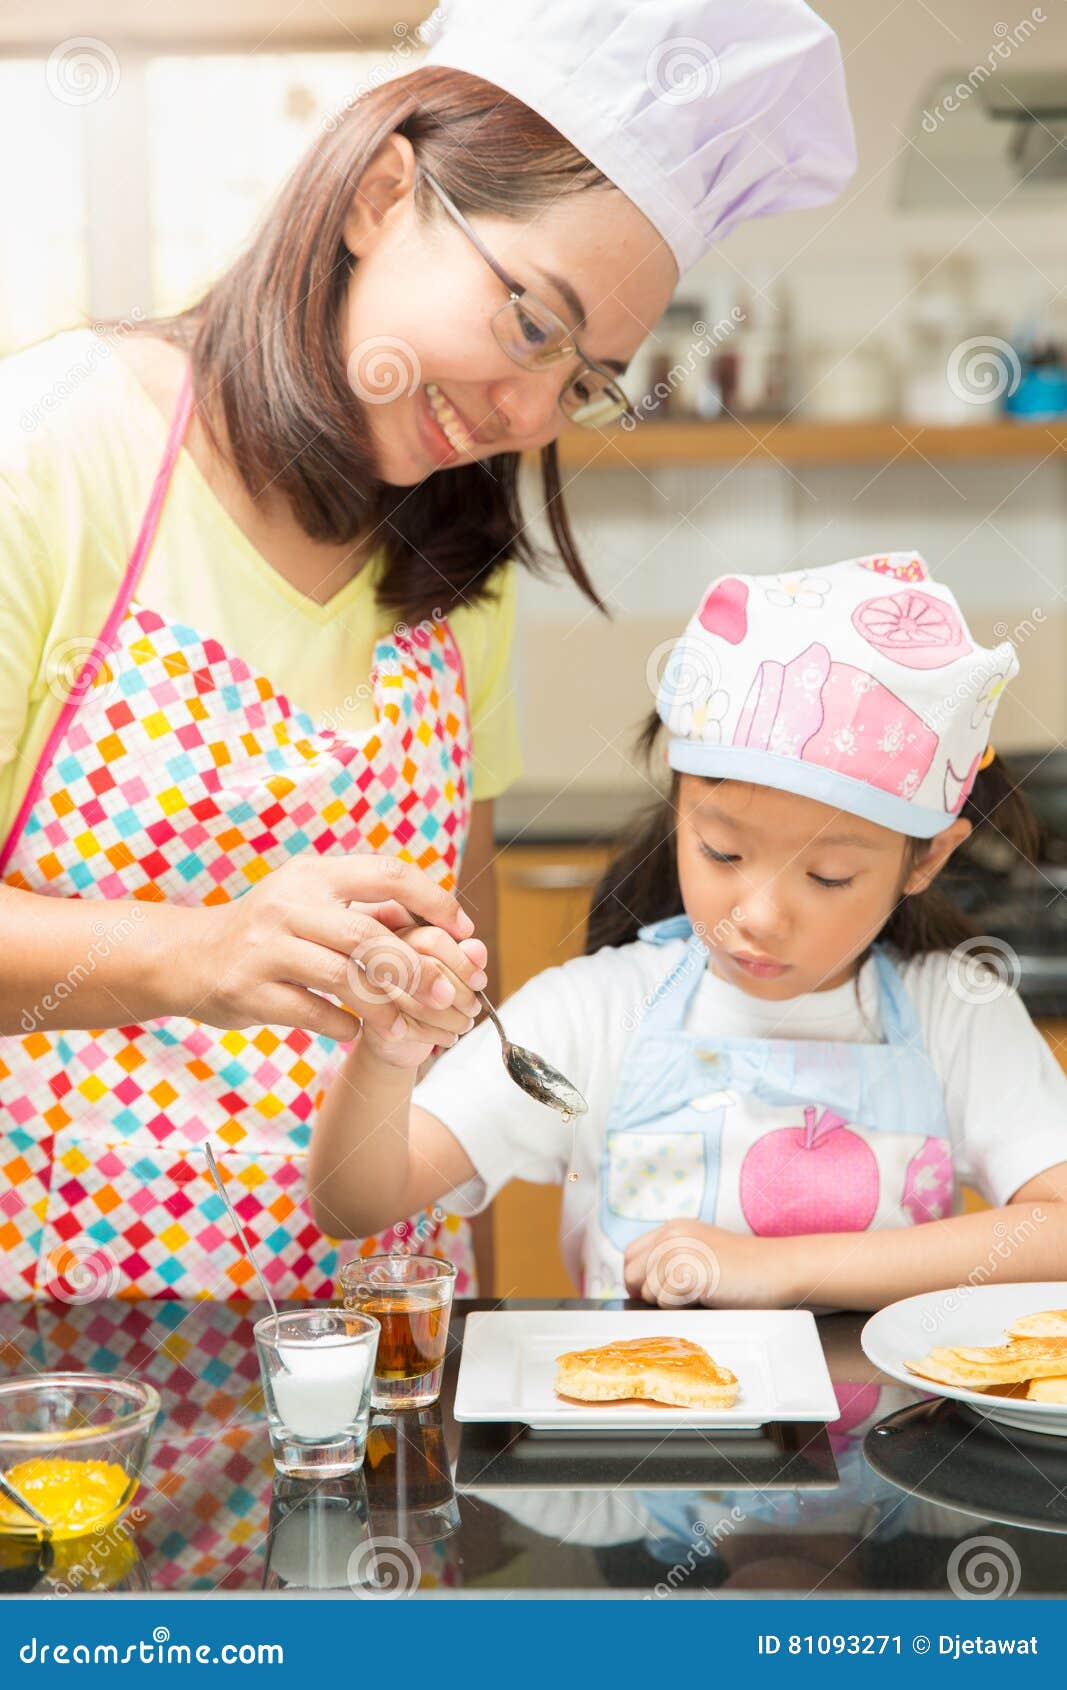 Asian Family Enjoy Making Pancake, Asian Mother And Daughter Enjoy Making Bakery Stock Image 